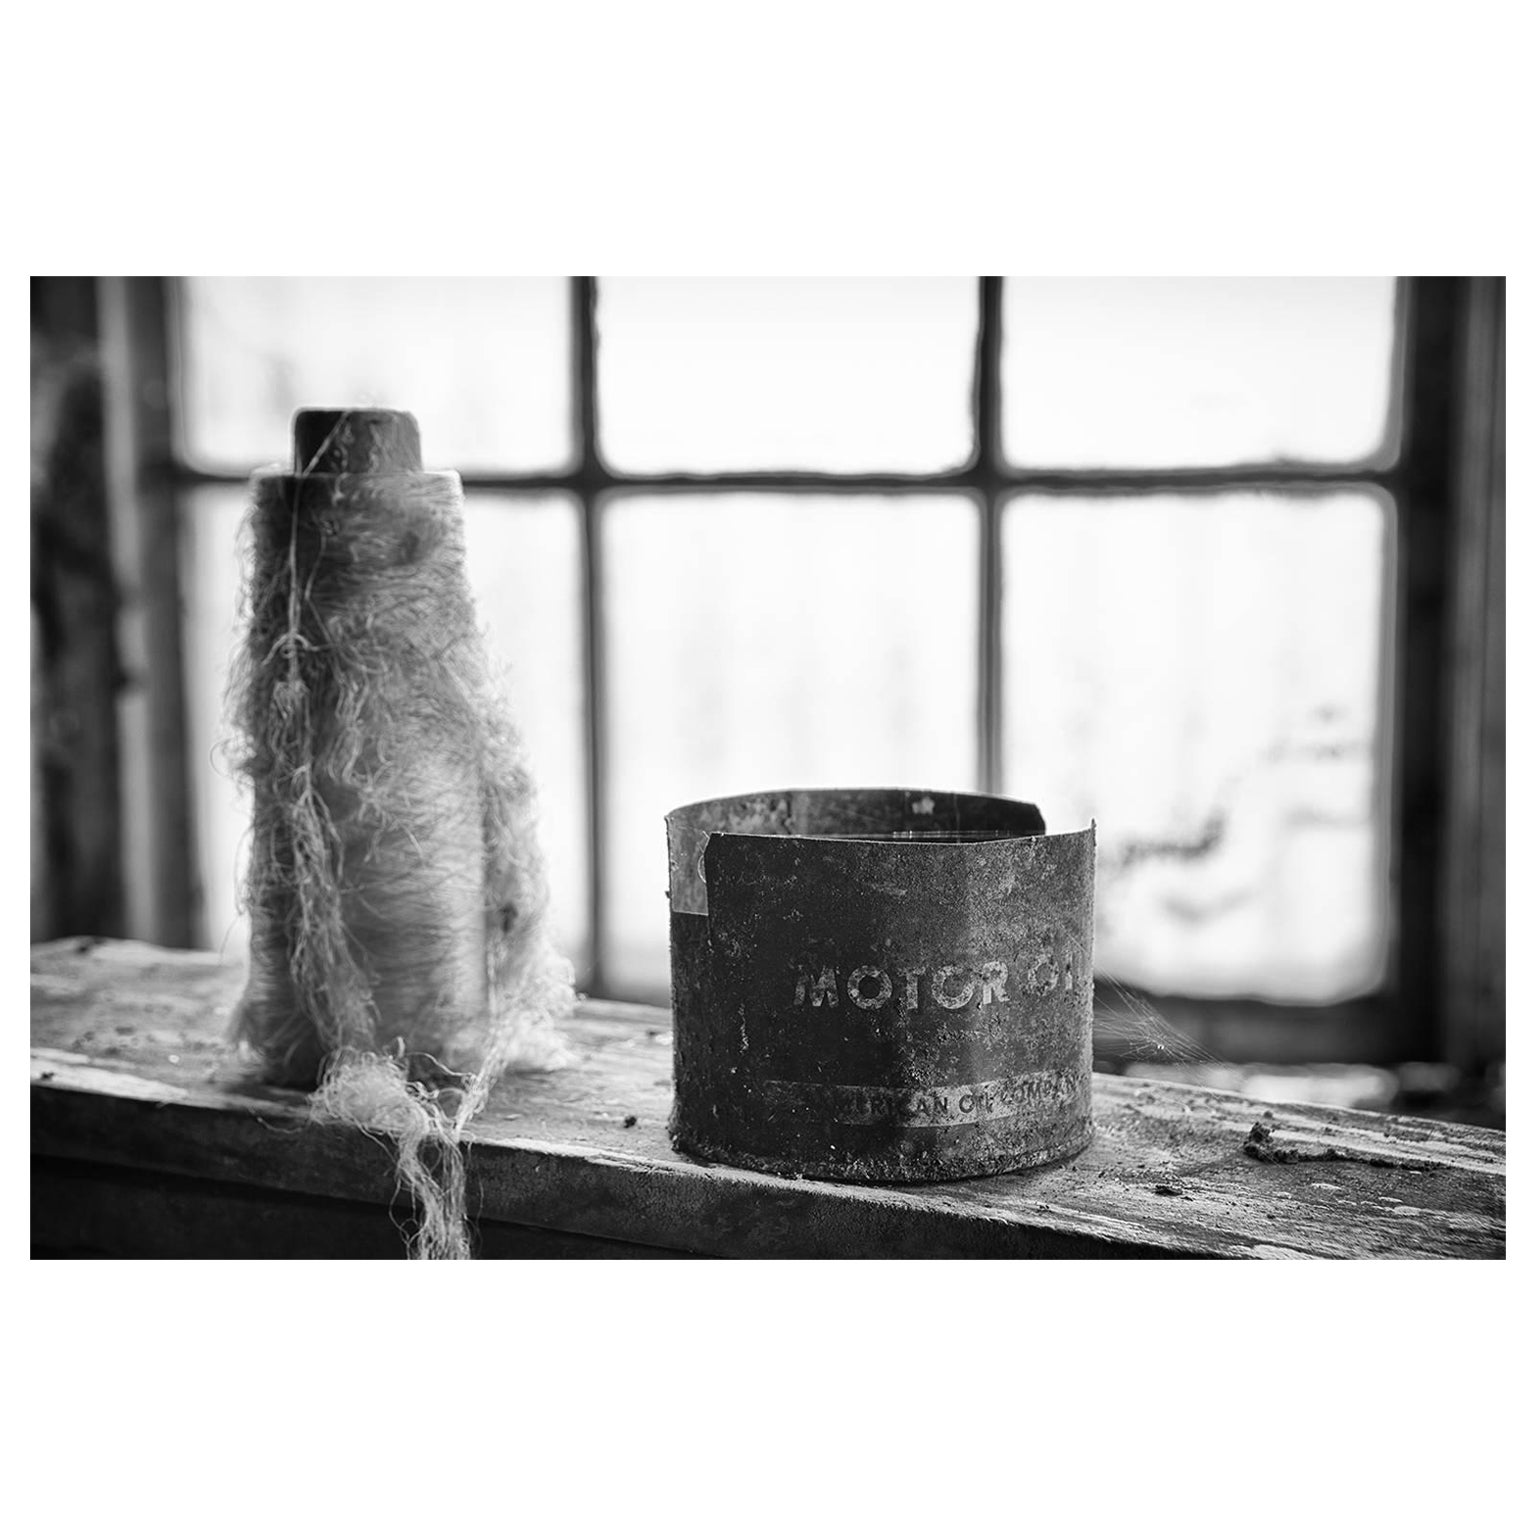 „Collection #3“, Schwarz-Weiß, verlassen, Seidenfabrik, Industrie, Fotografie